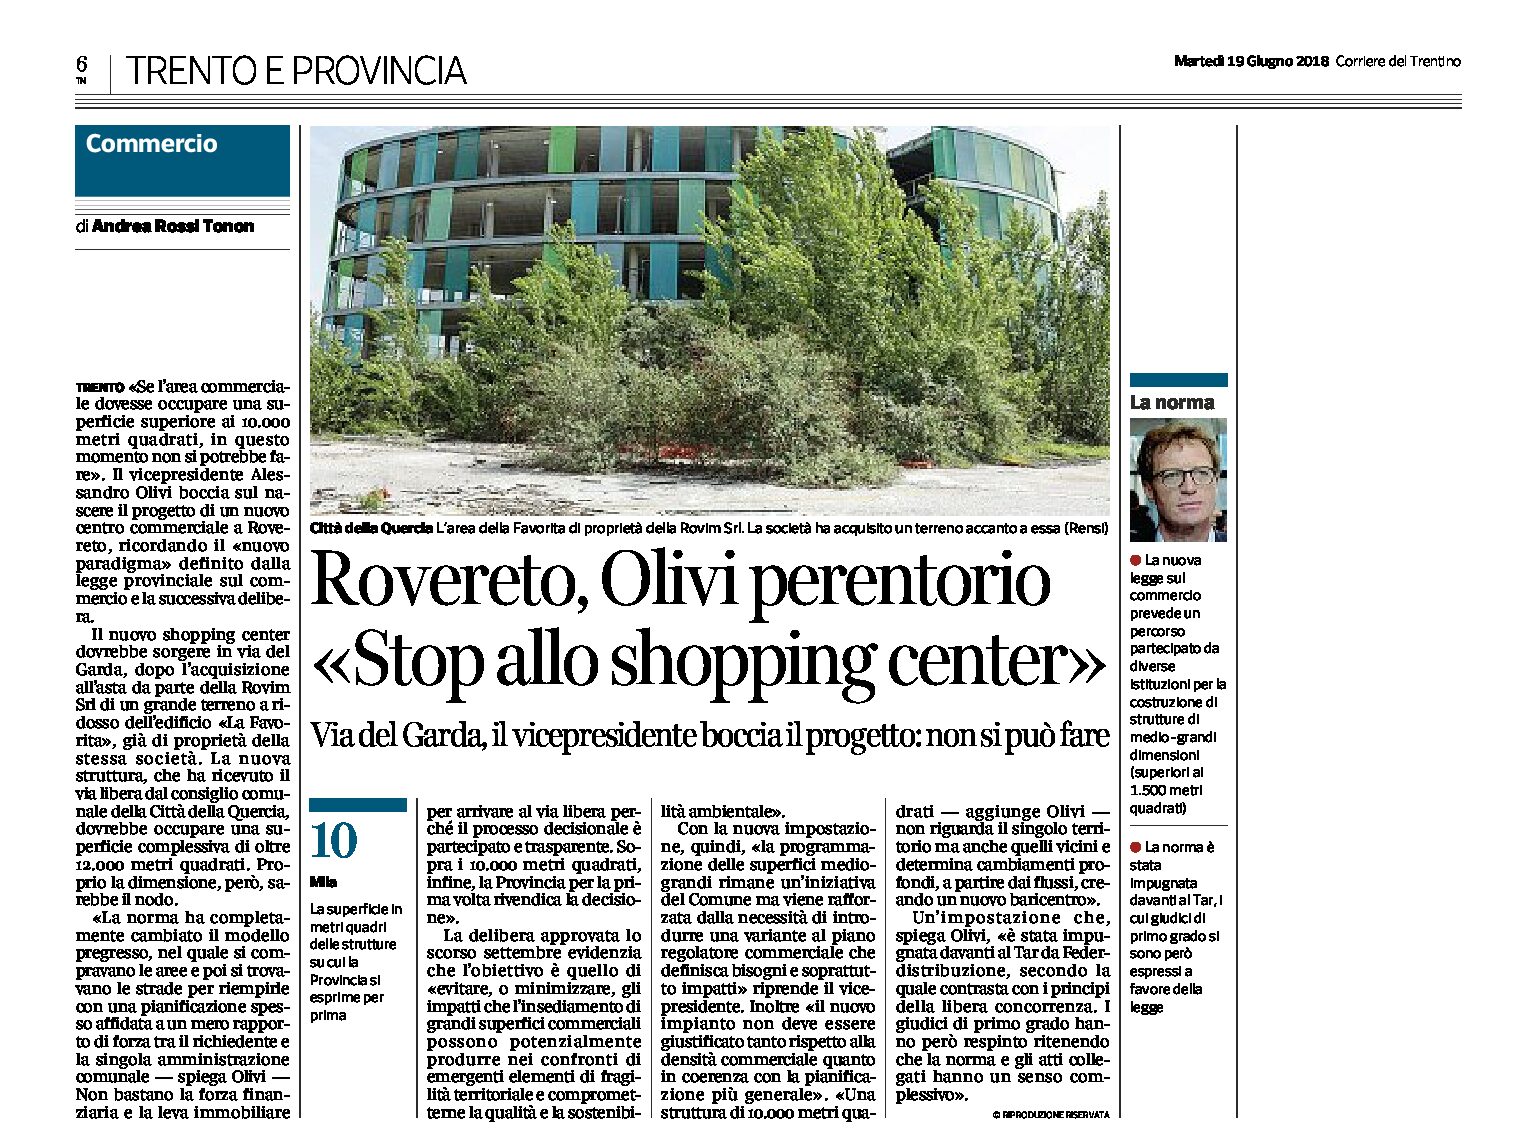 Rovereto, via del Garda: no della Provincia al nuovo shopping center